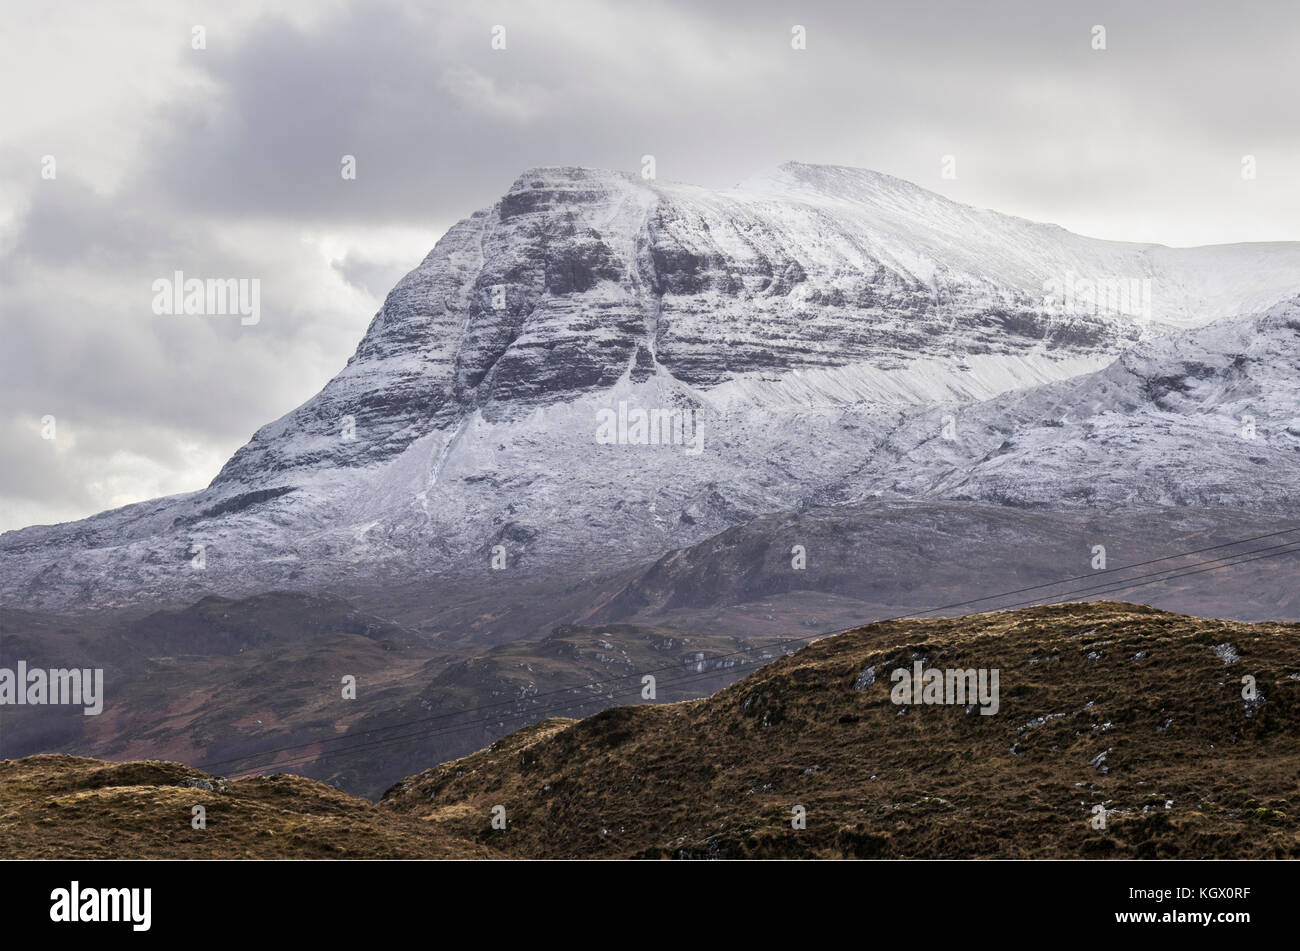 Mit Segel gharbh quinag Mountain Peak im Winter mit Schnee im assynt, Sutherland, North West Highlands von Schottland an der Nordküste 500 Route, Großbritannien Stockfoto